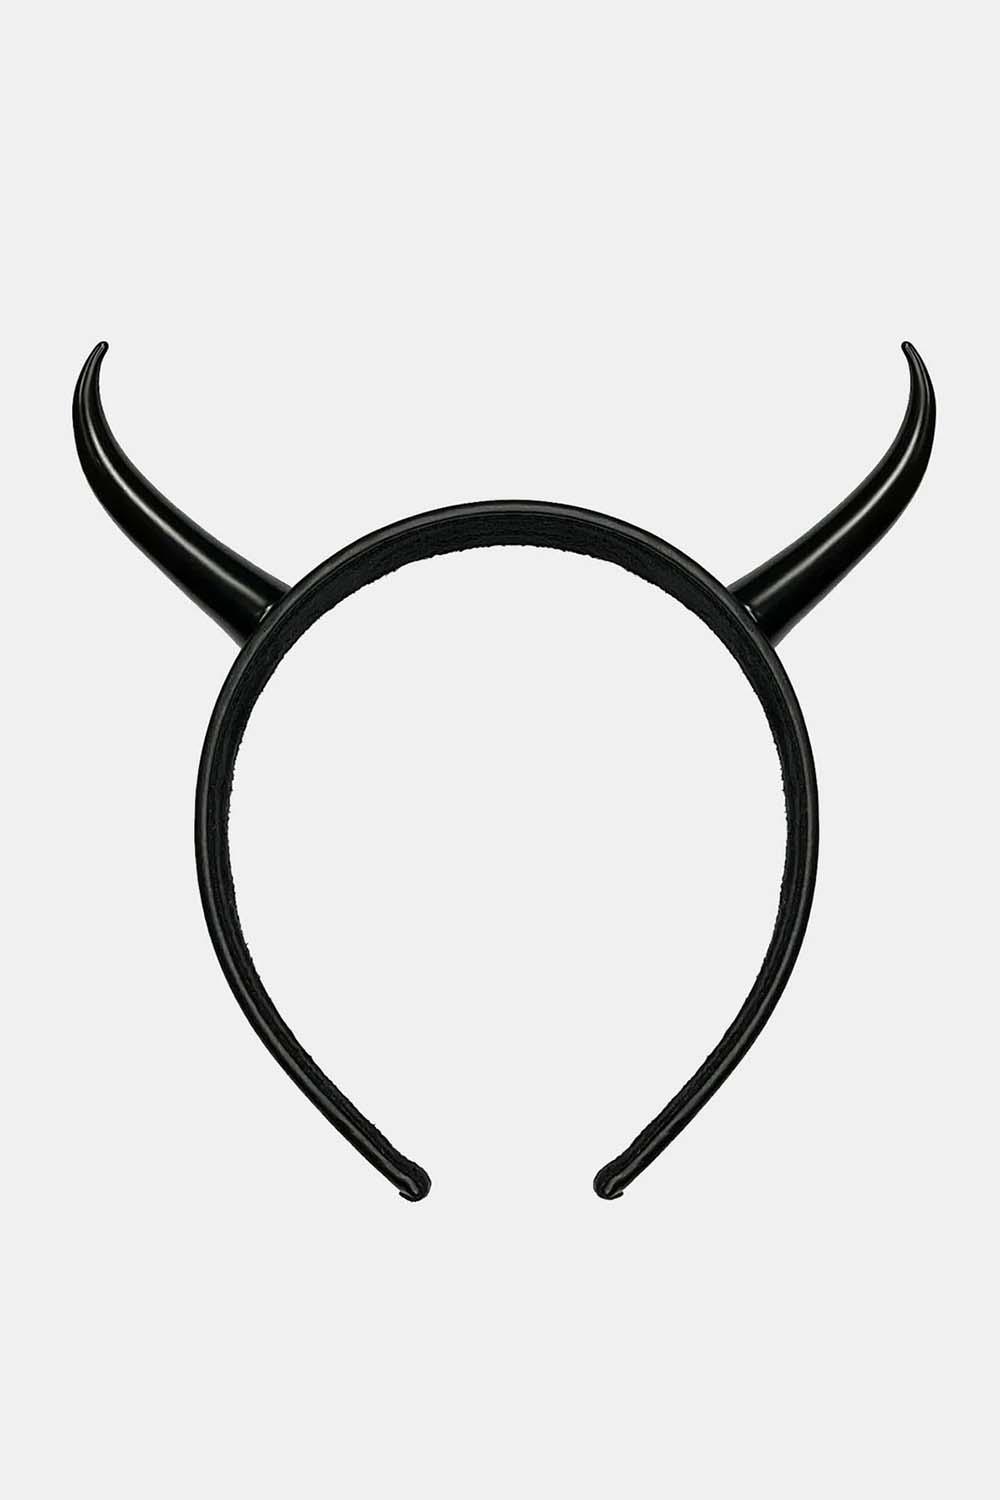 Killstar Beast Headband - VampireFreaks